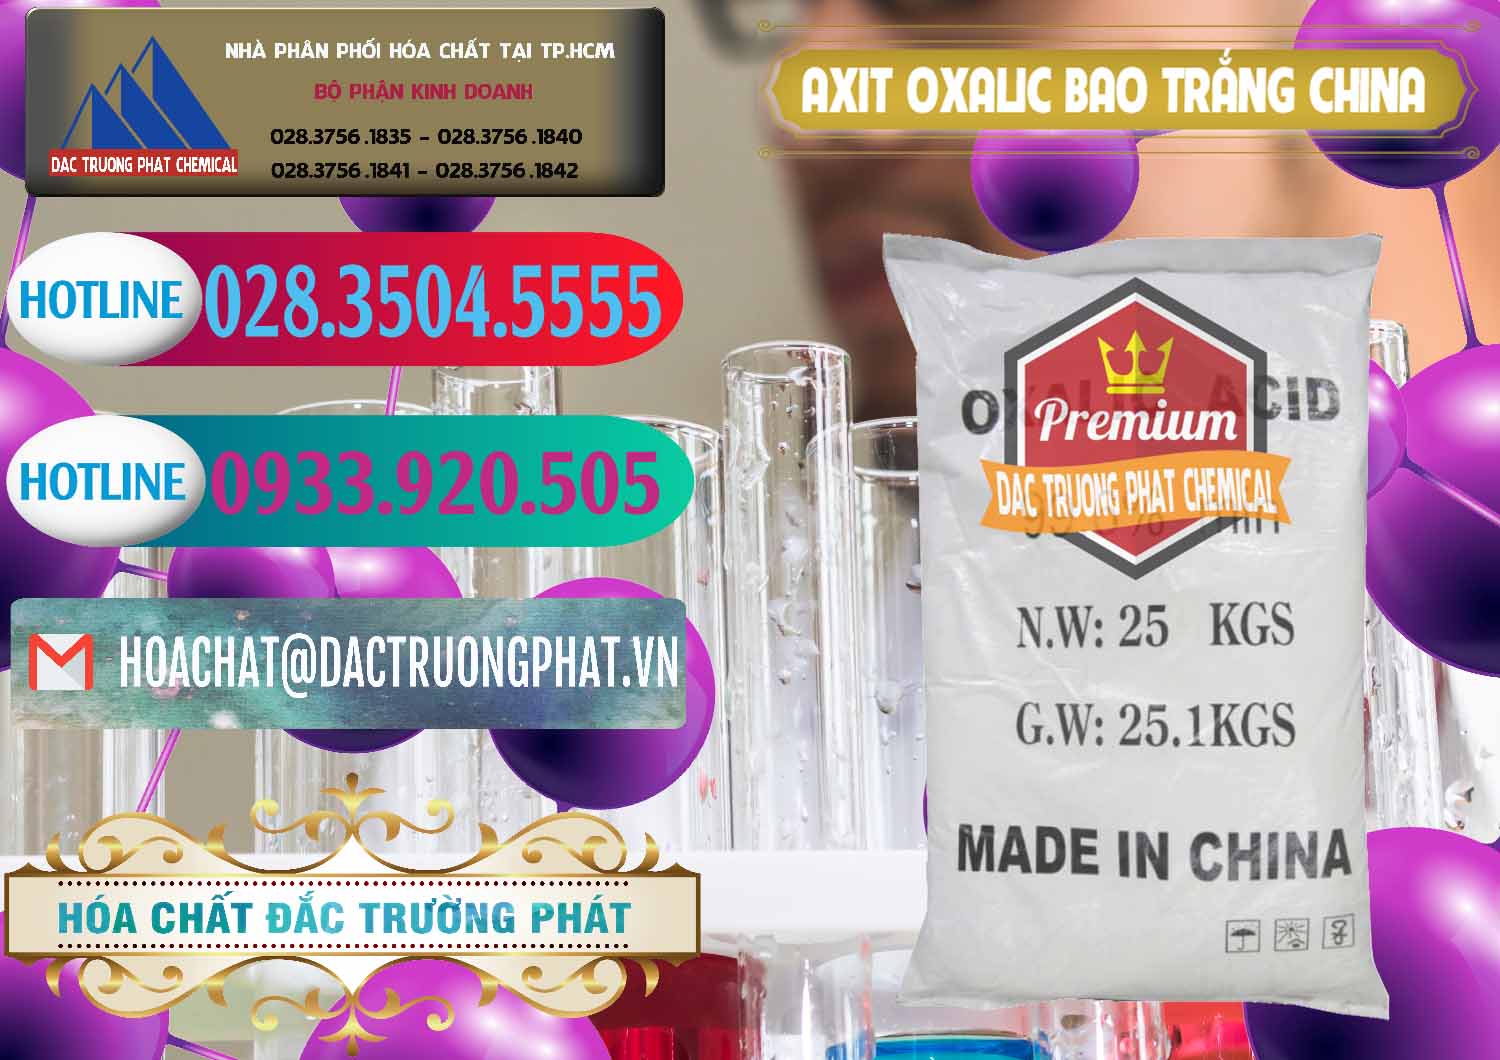 Nơi cung cấp - bán Acid Oxalic – Axit Oxalic 99.6% Bao Trắng Trung Quốc China - 0270 - Đơn vị chuyên cung cấp & bán hóa chất tại TP.HCM - truongphat.vn